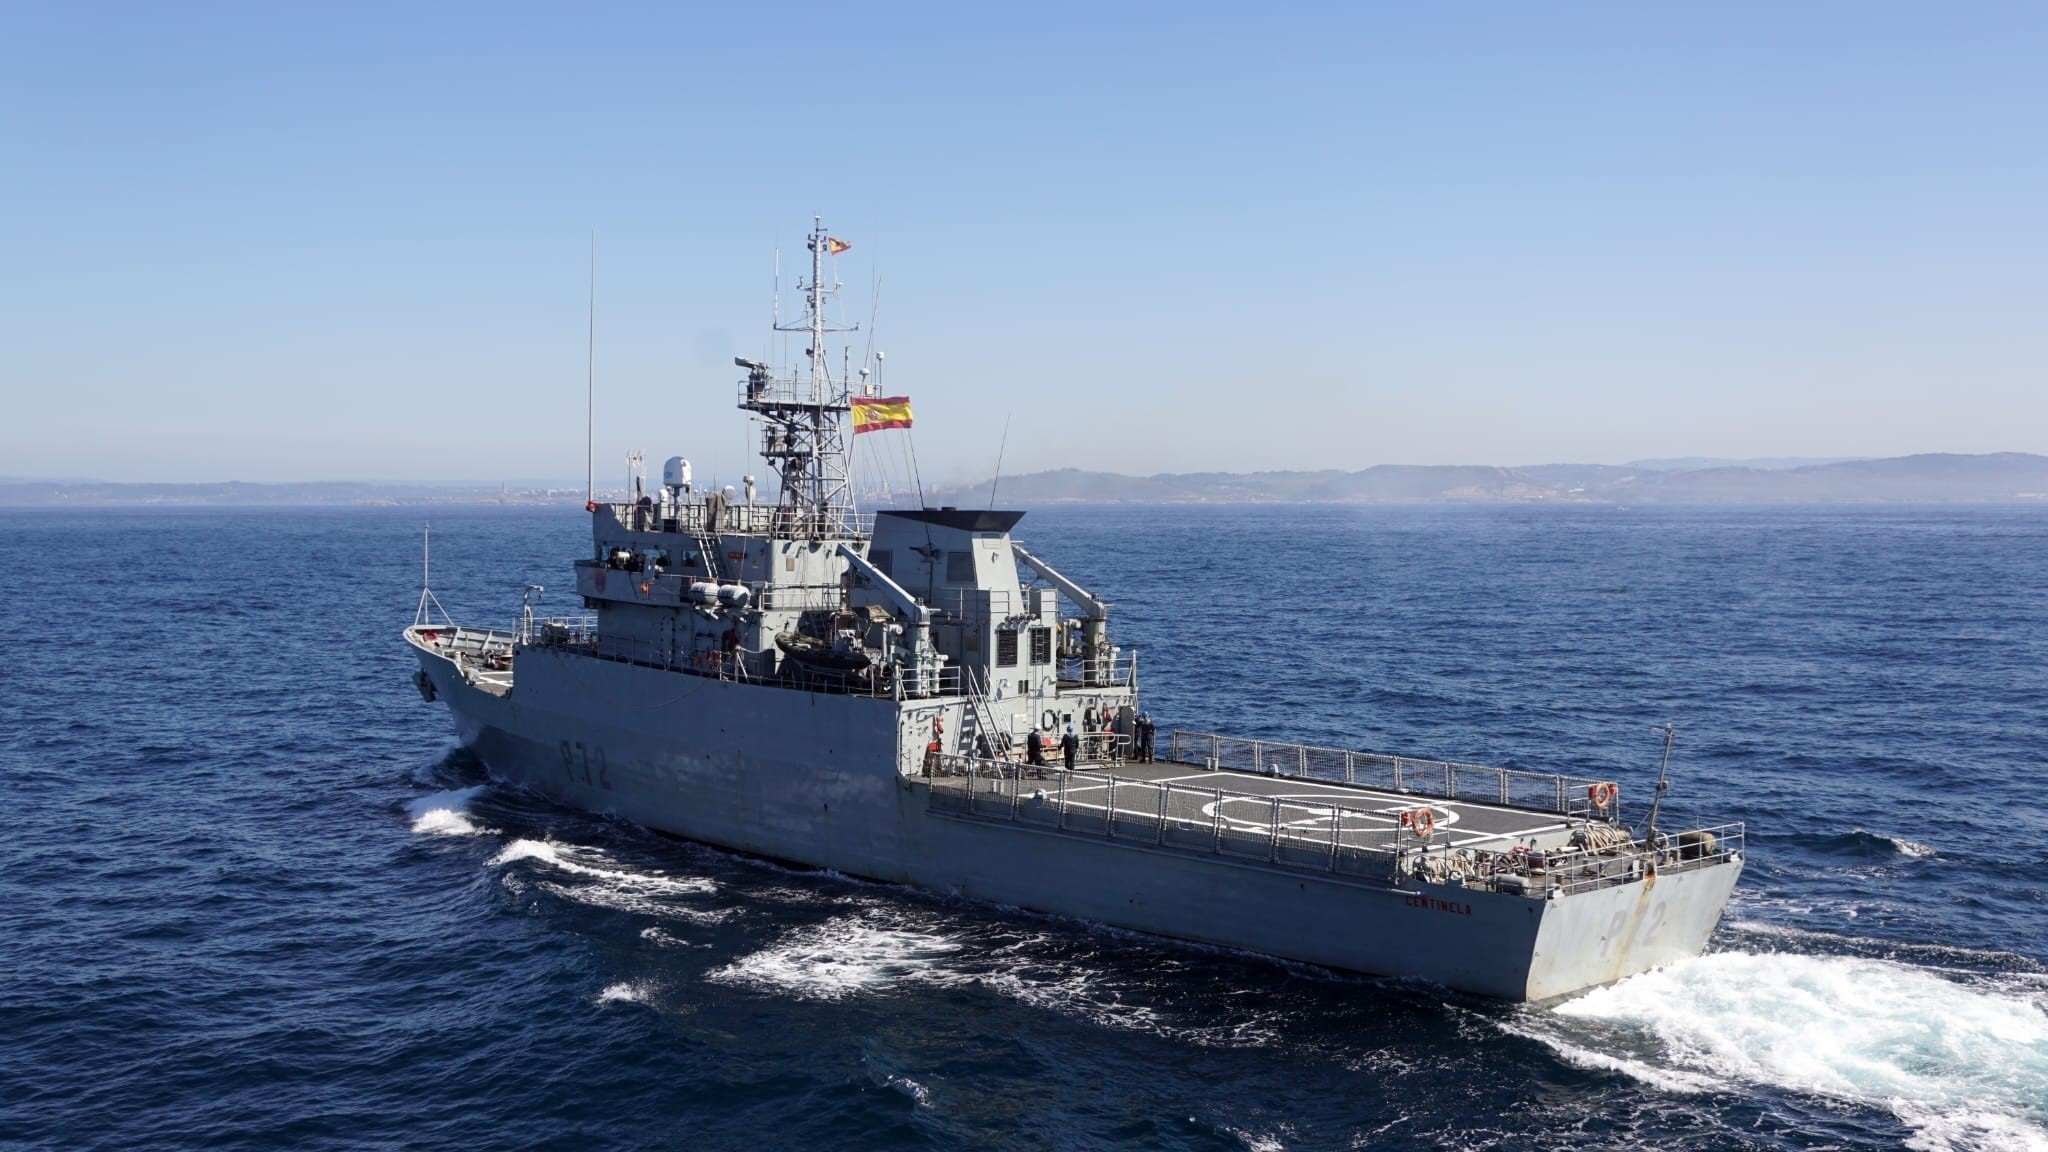 Vigilan dos barcos de guerra rusos que navegan delante de la costa gallega